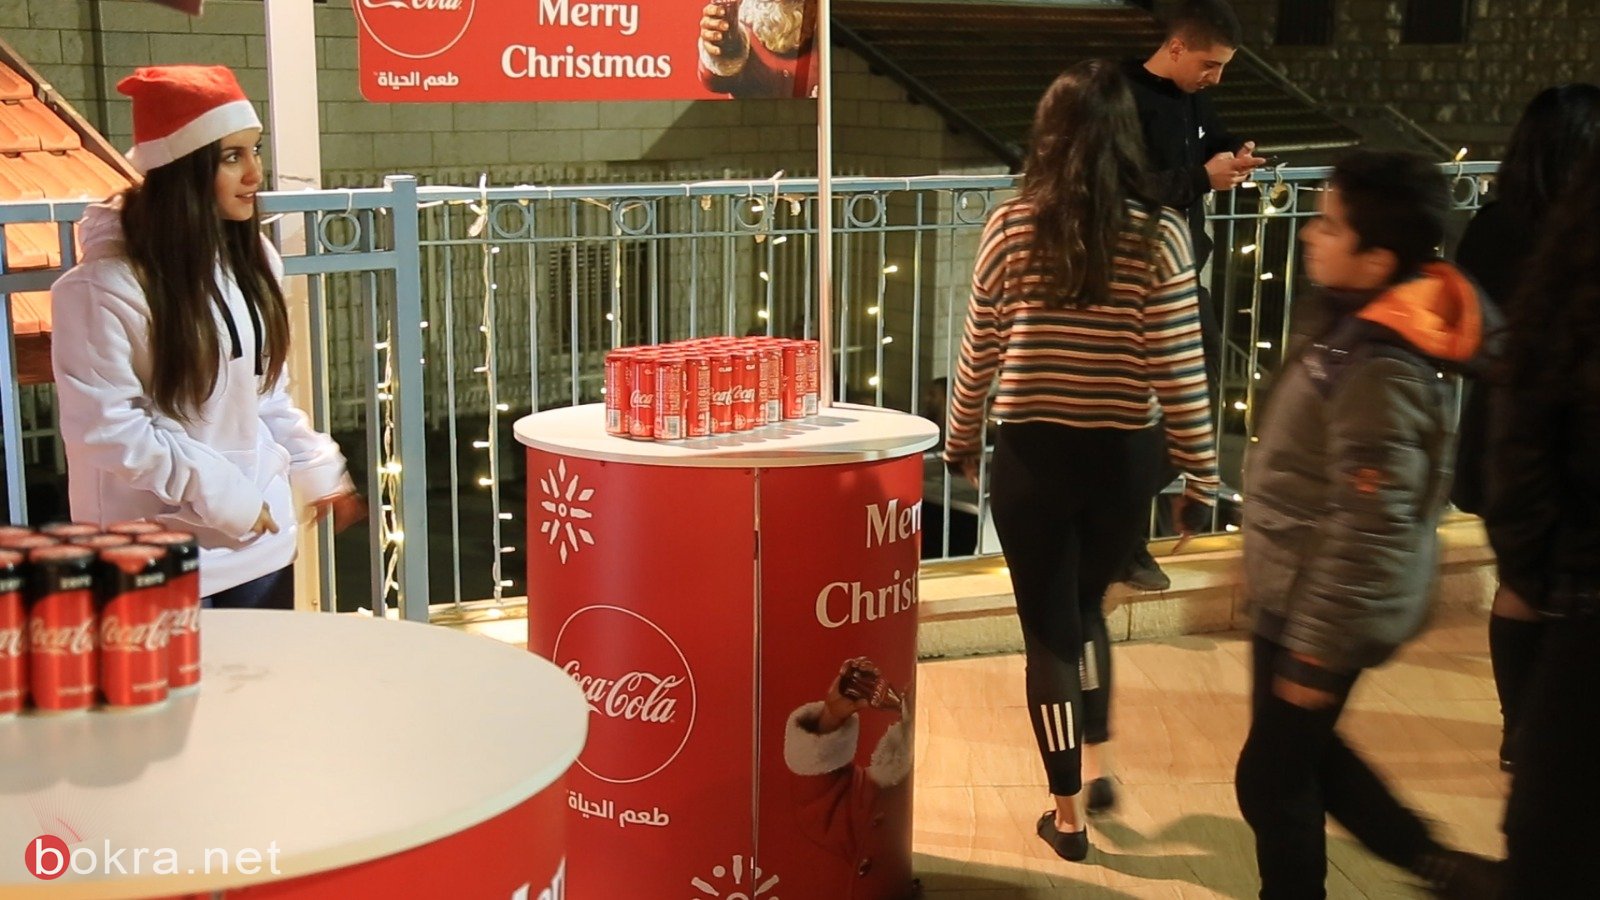 تتويج فعاليات الميلاد بأضخم عرض استعراضي غنائي راقص "كسارة الجوز" في الناصرة، برعاية كوكاكولا-2